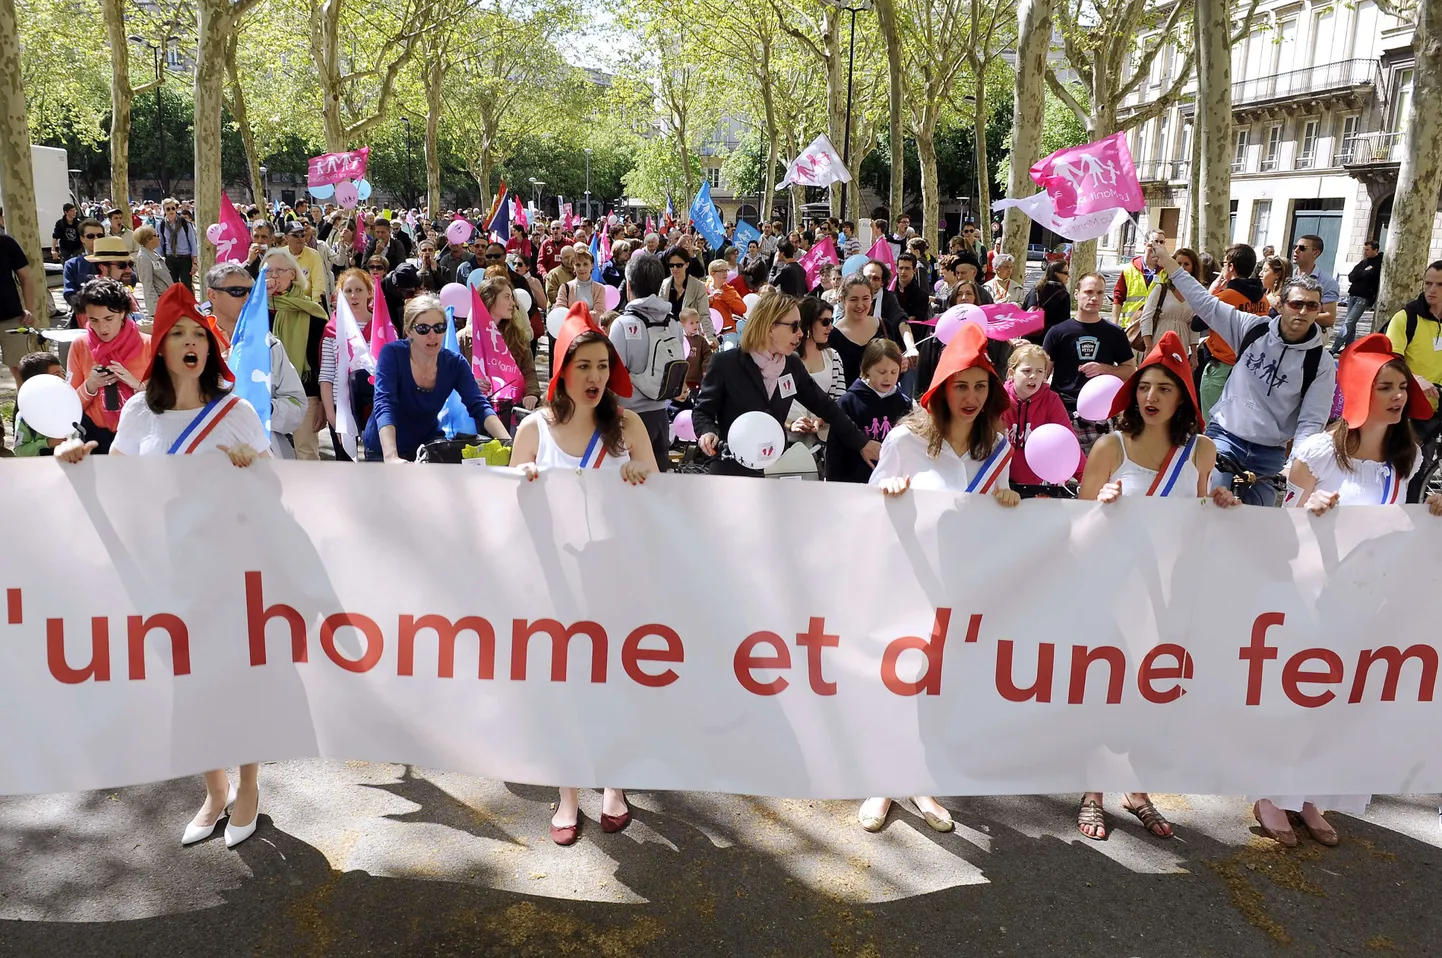 Samasooliste paaride abiellumise ja adopteerimise õigust käsitleva seaduse vastased eile Bordeaux' tänavatel meelt avaldamas.